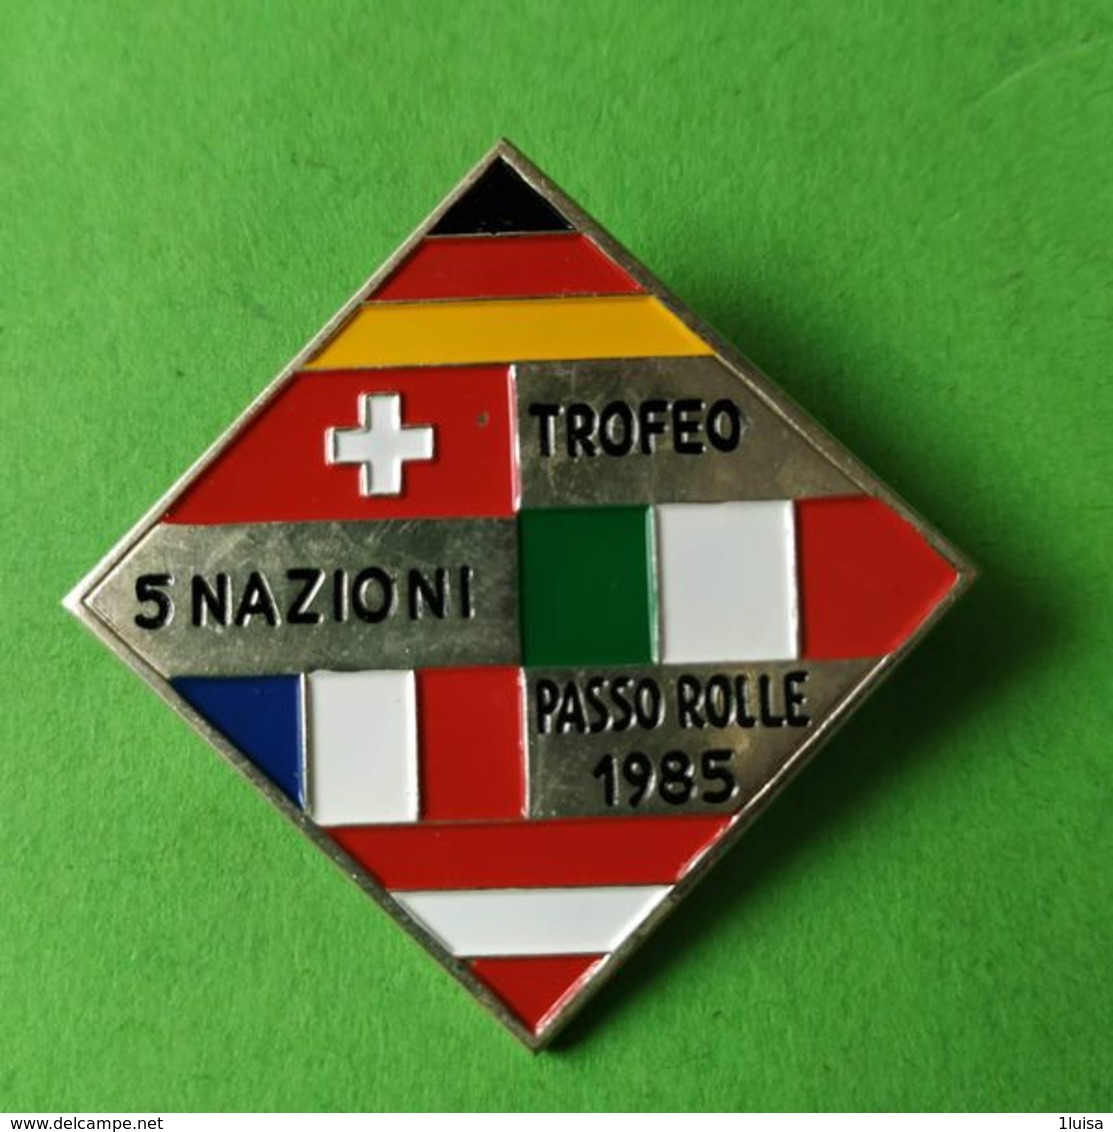 SPORT INVERNALI SPILLE  Trofeo 5 Nazioni Passo Rolle 1985 - Italia